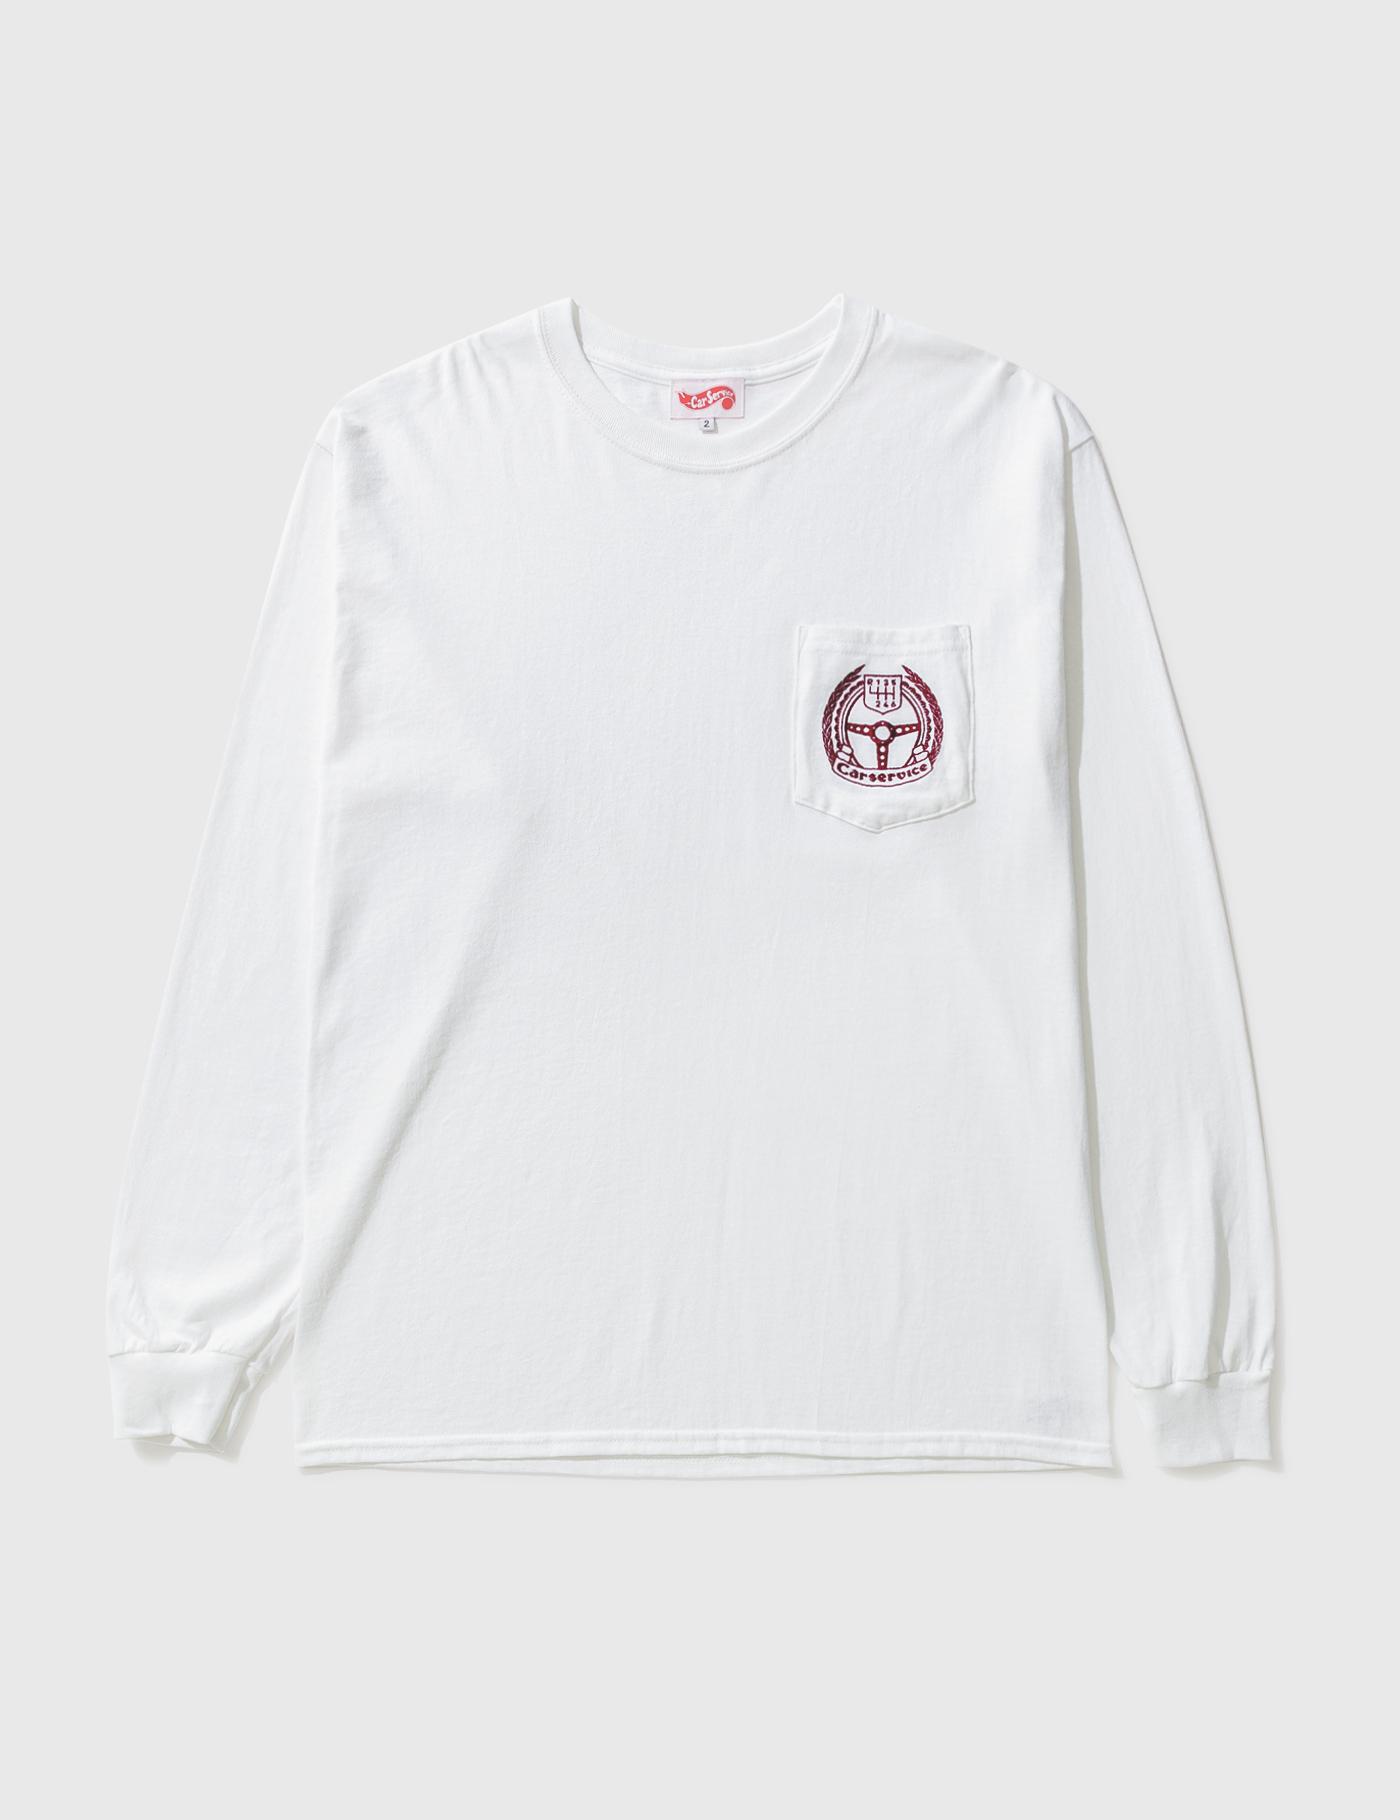 CS Emblem Long Sleeve T-shirt by CAR SERVICE